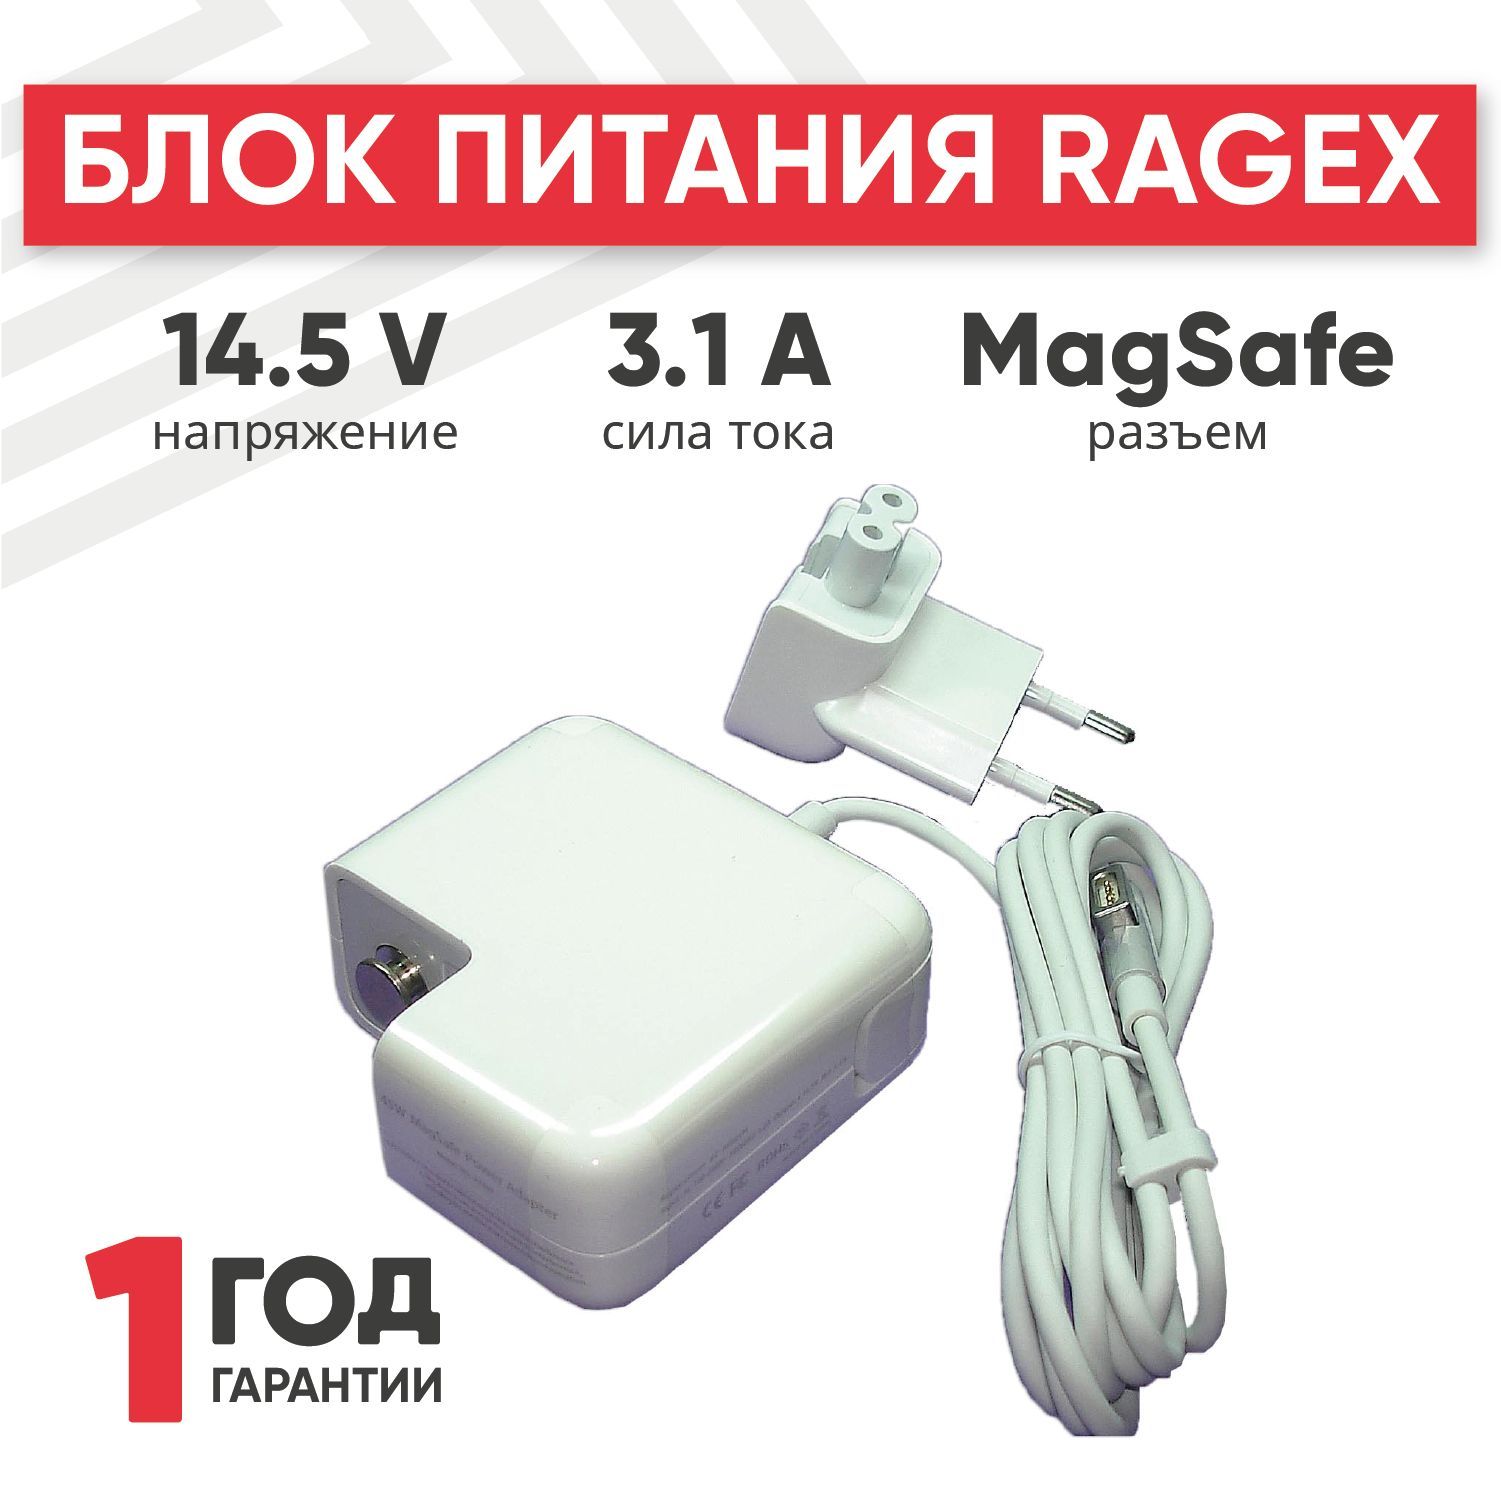 Зарядноеустройство(блокпитания/зарядка/сетевойадаптер)RageX661-6054дляноутбуковAirA1237/A1304/A1370(3.1A,14.5V,45W),штекерMagSafe.Уцененныйтовар